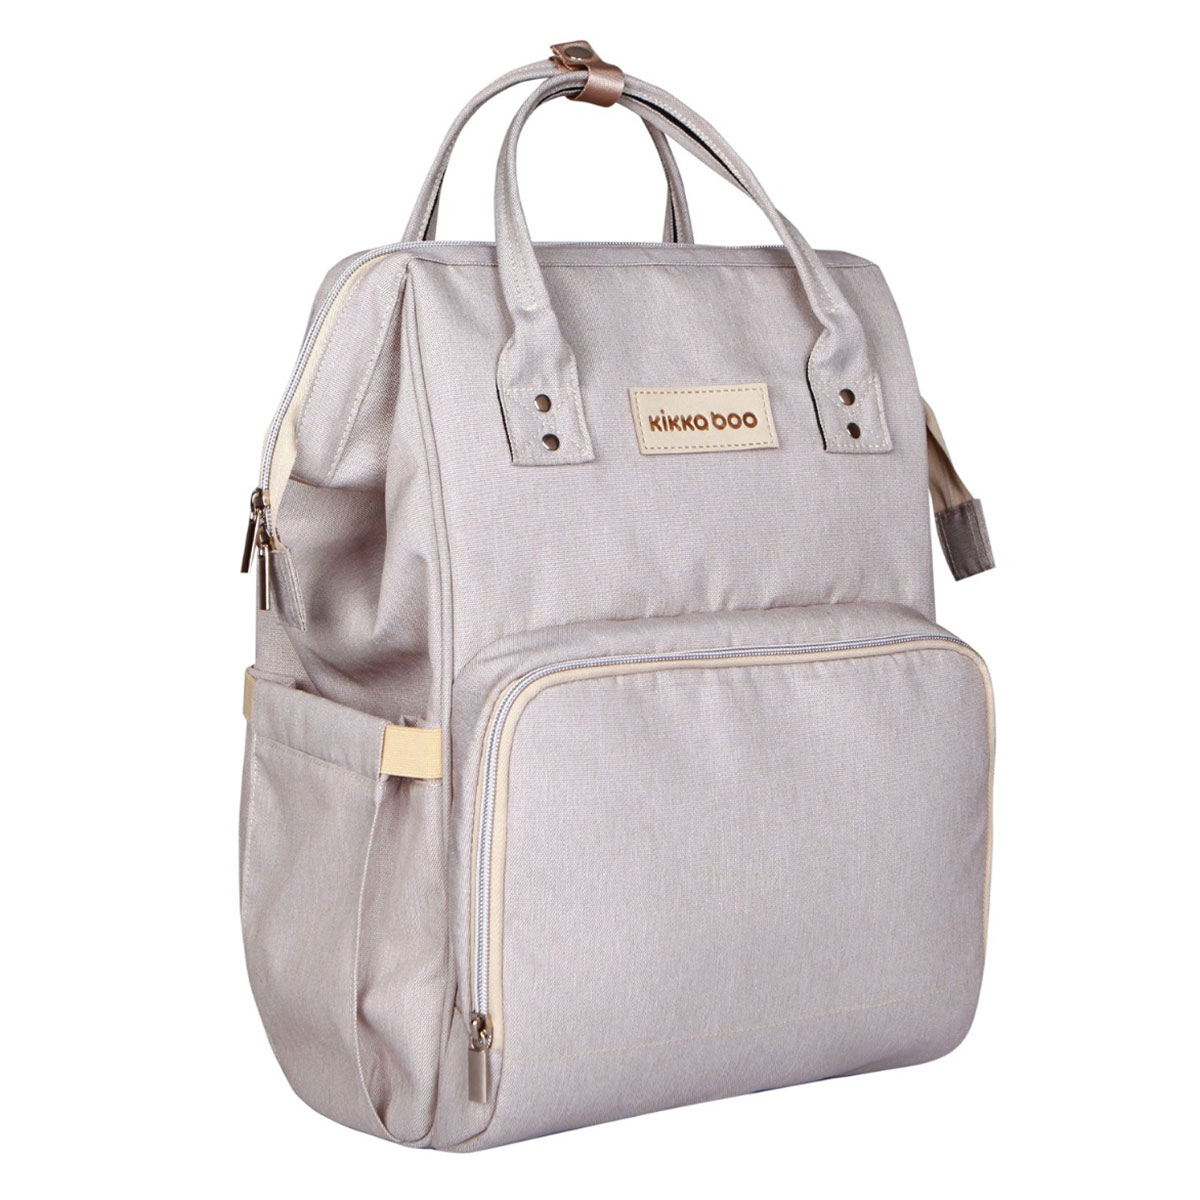 Τσάντα Αλλαξιέρα Backpack (21x27x42) Kikka Boo Siena Light Grey 236800